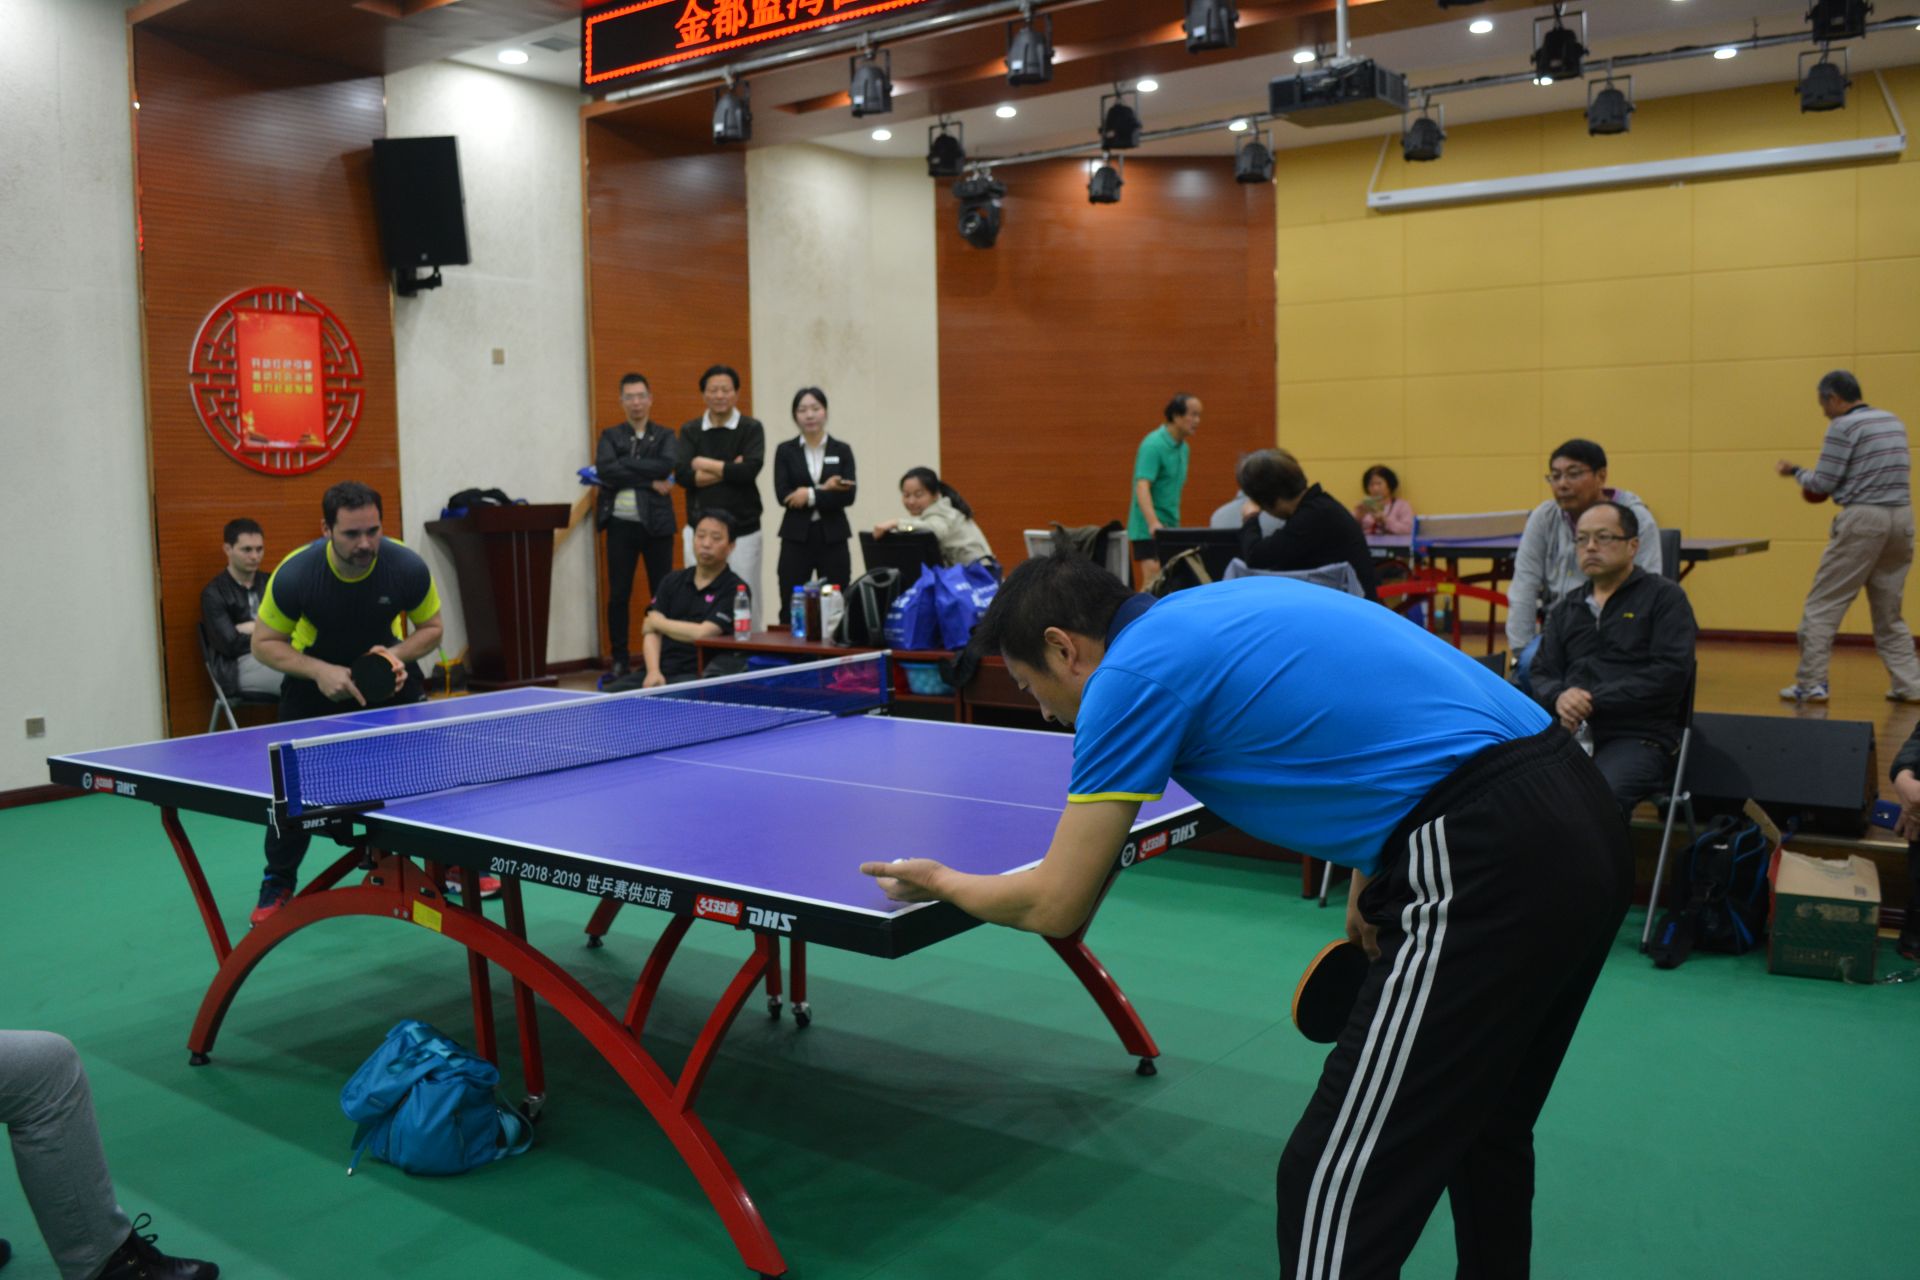 金都蓝湾社区举办乒乓球赛 法国朋友飞回武汉